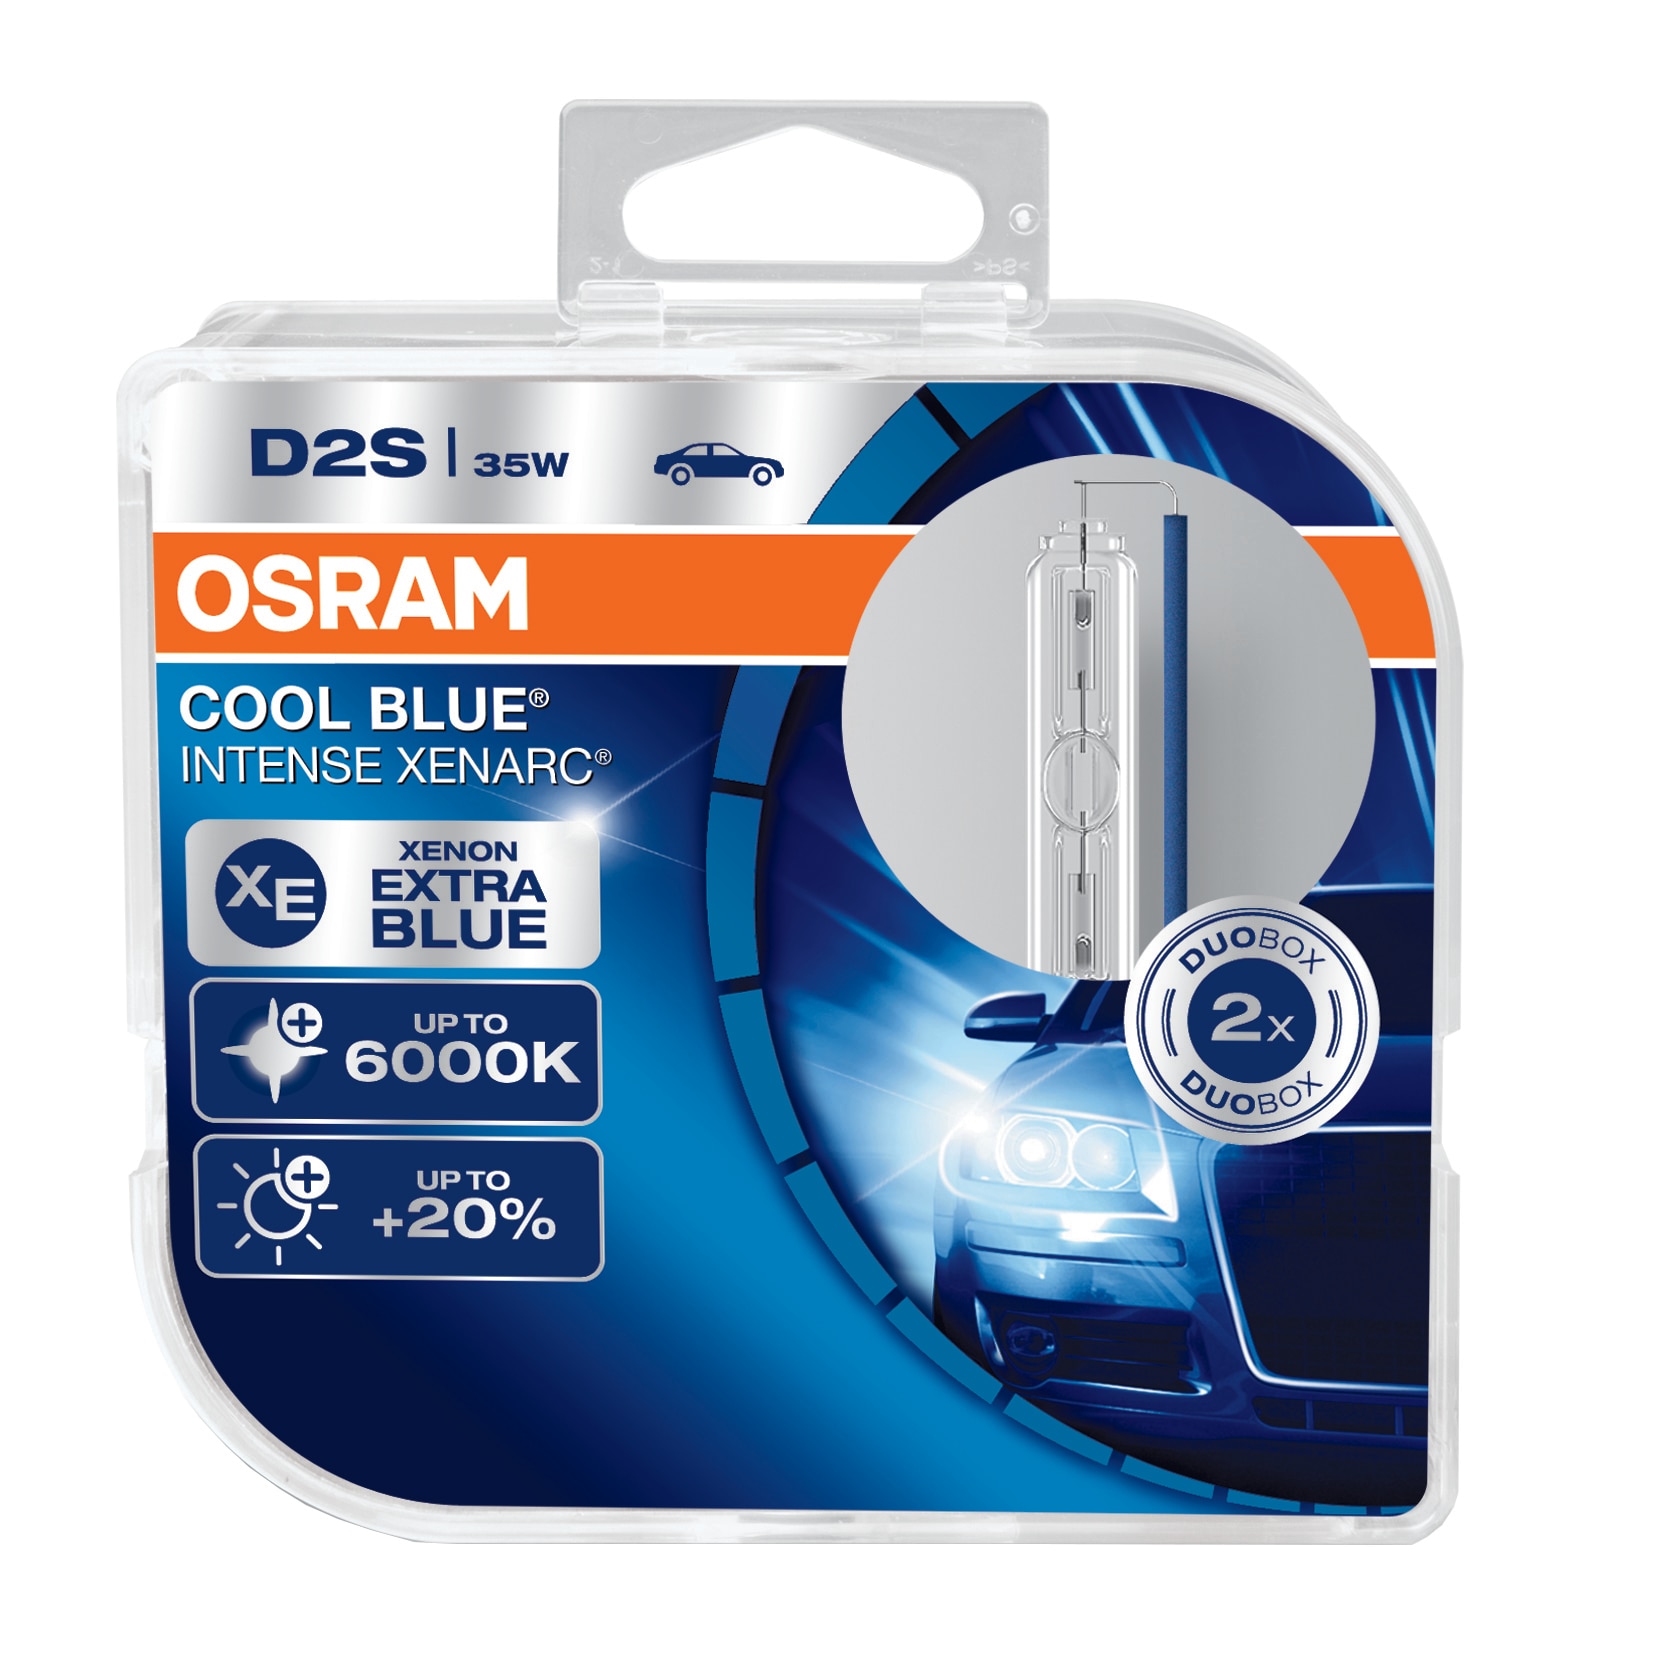 Osram D2S Cool Blue Intense fényszóró izzó készlet, 35W, 2 darab 